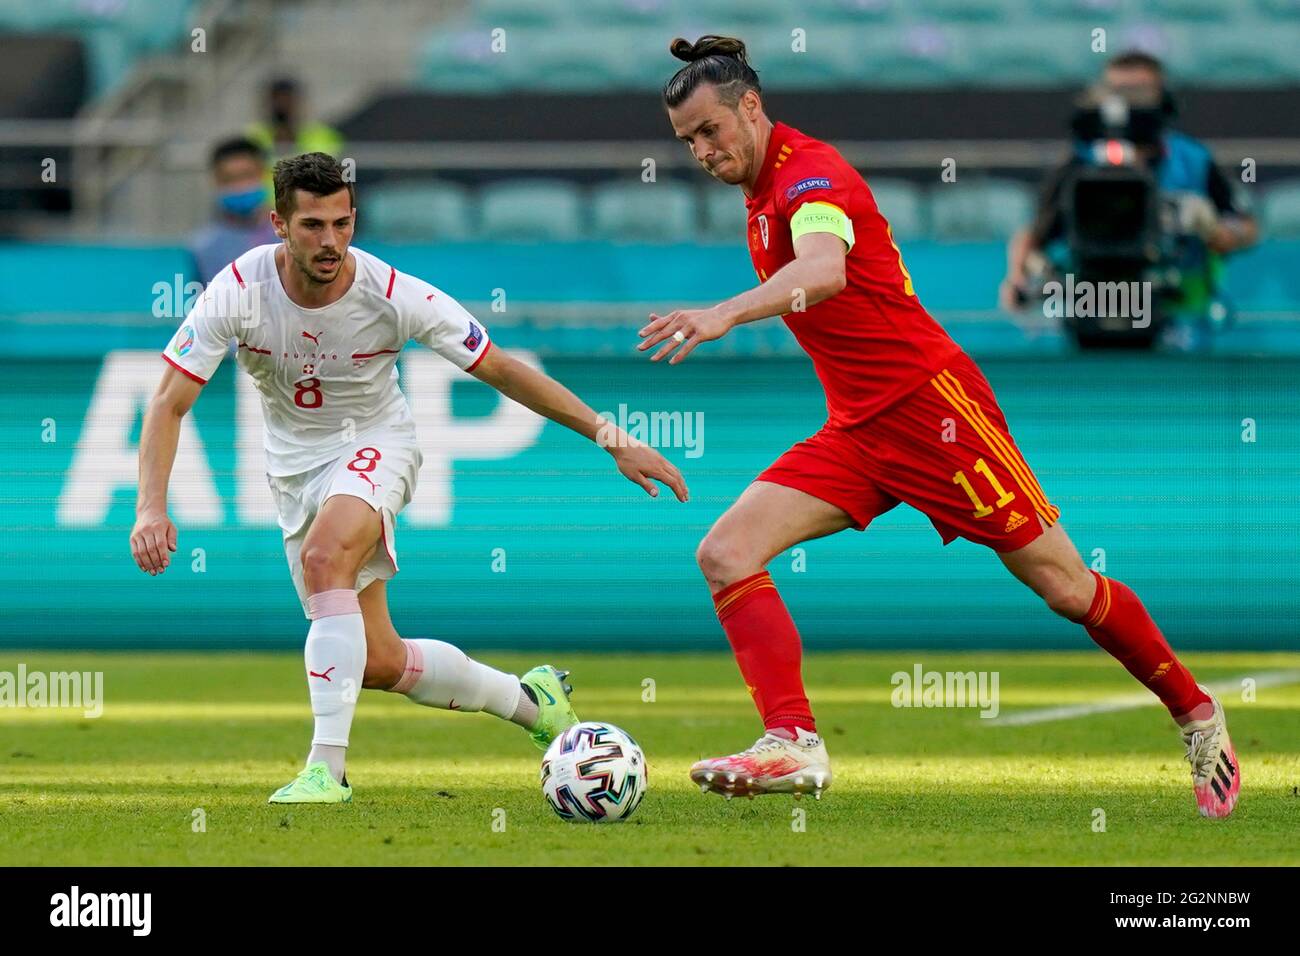 Gareth, de Gales, se enfrentará a Remo Freuler, de Suiza, durante el partido del grupo A de la UEFA EURO 2020 en el estadio olímpico de Bakú, Azerbaiyán. Fecha de la foto: Sábado 12 de junio de 2021. Foto de stock